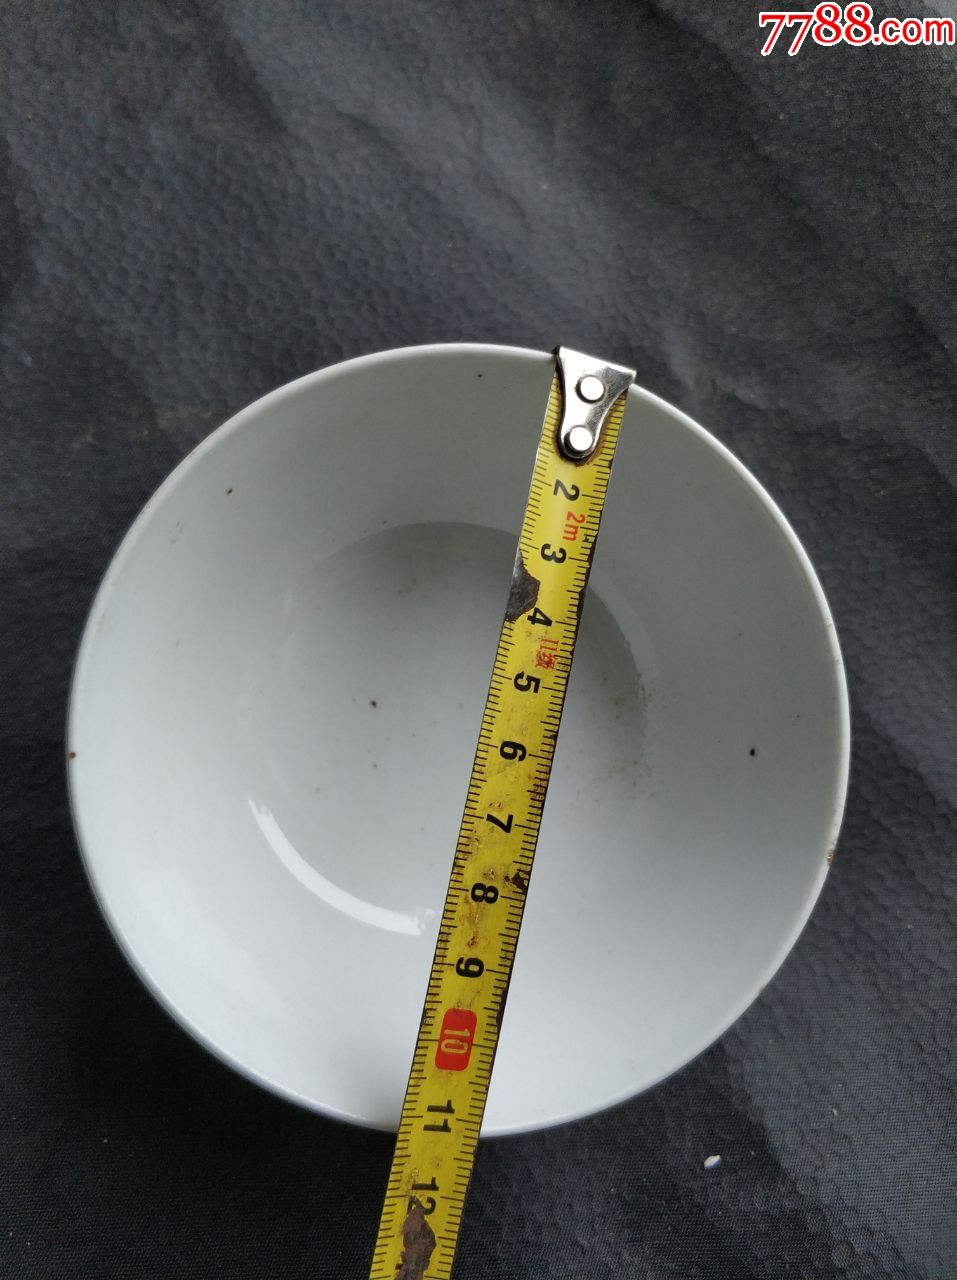 瓷器碗,沿口有一厘米的细线,其余完好,口径12厘米